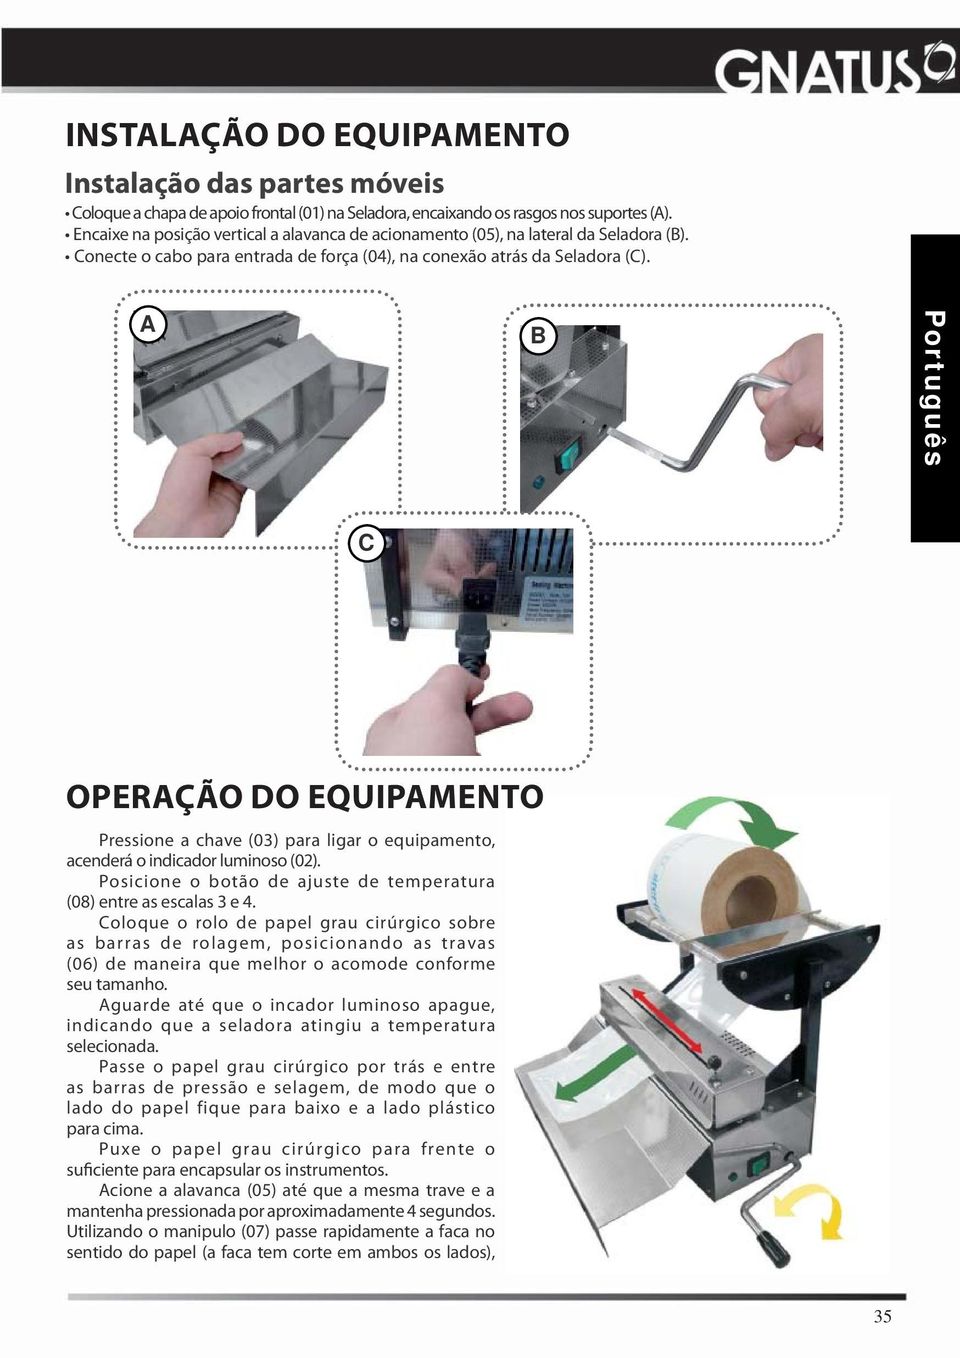 A B Português C OPERAÇÃO DO EQUIPAMENTO Pressione a chave (03) para ligar o equipamento, acenderá o indicador luminoso (02). Posicione o botão de ajuste de temperatura (08) entre as escalas 3 e 4.